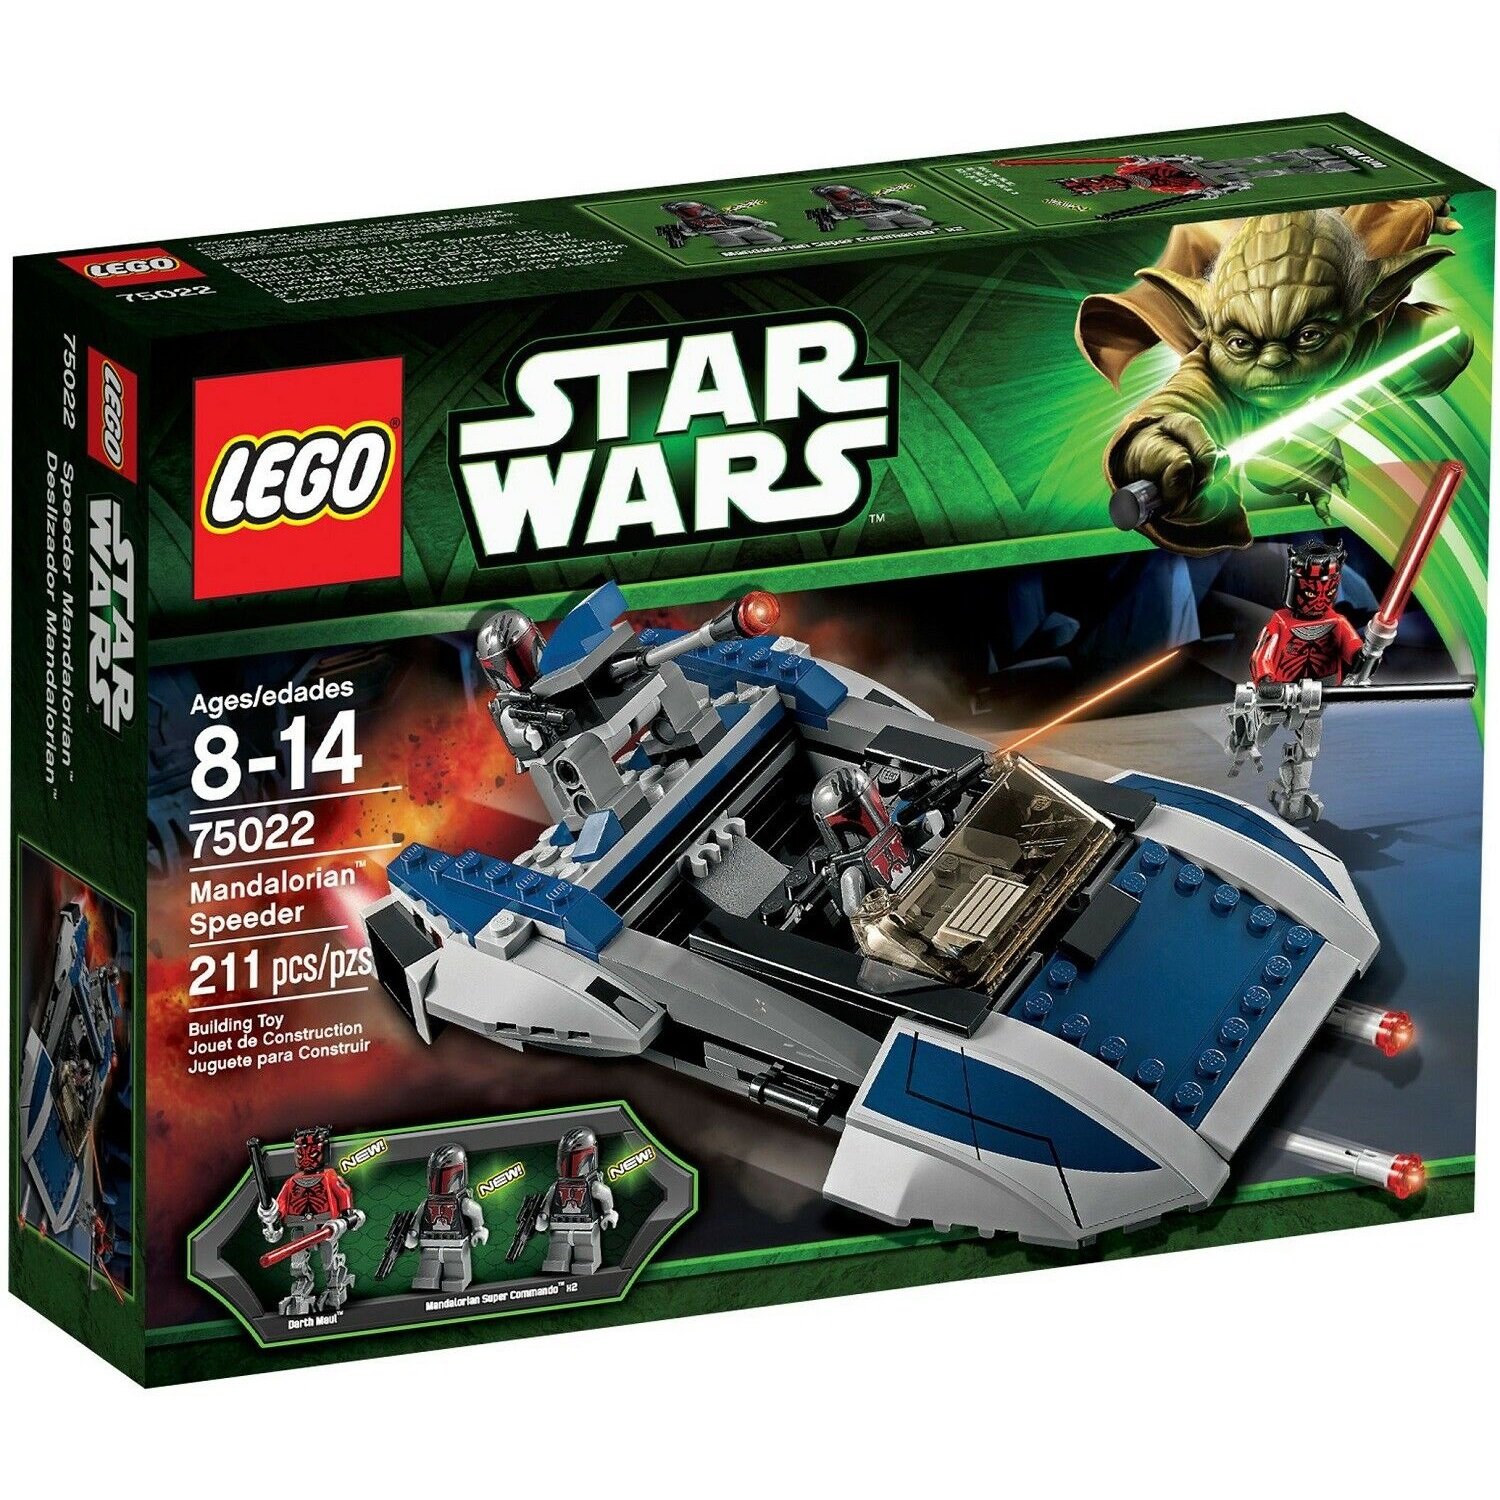 75022 Lego Star Wars Mandalorian Speeder